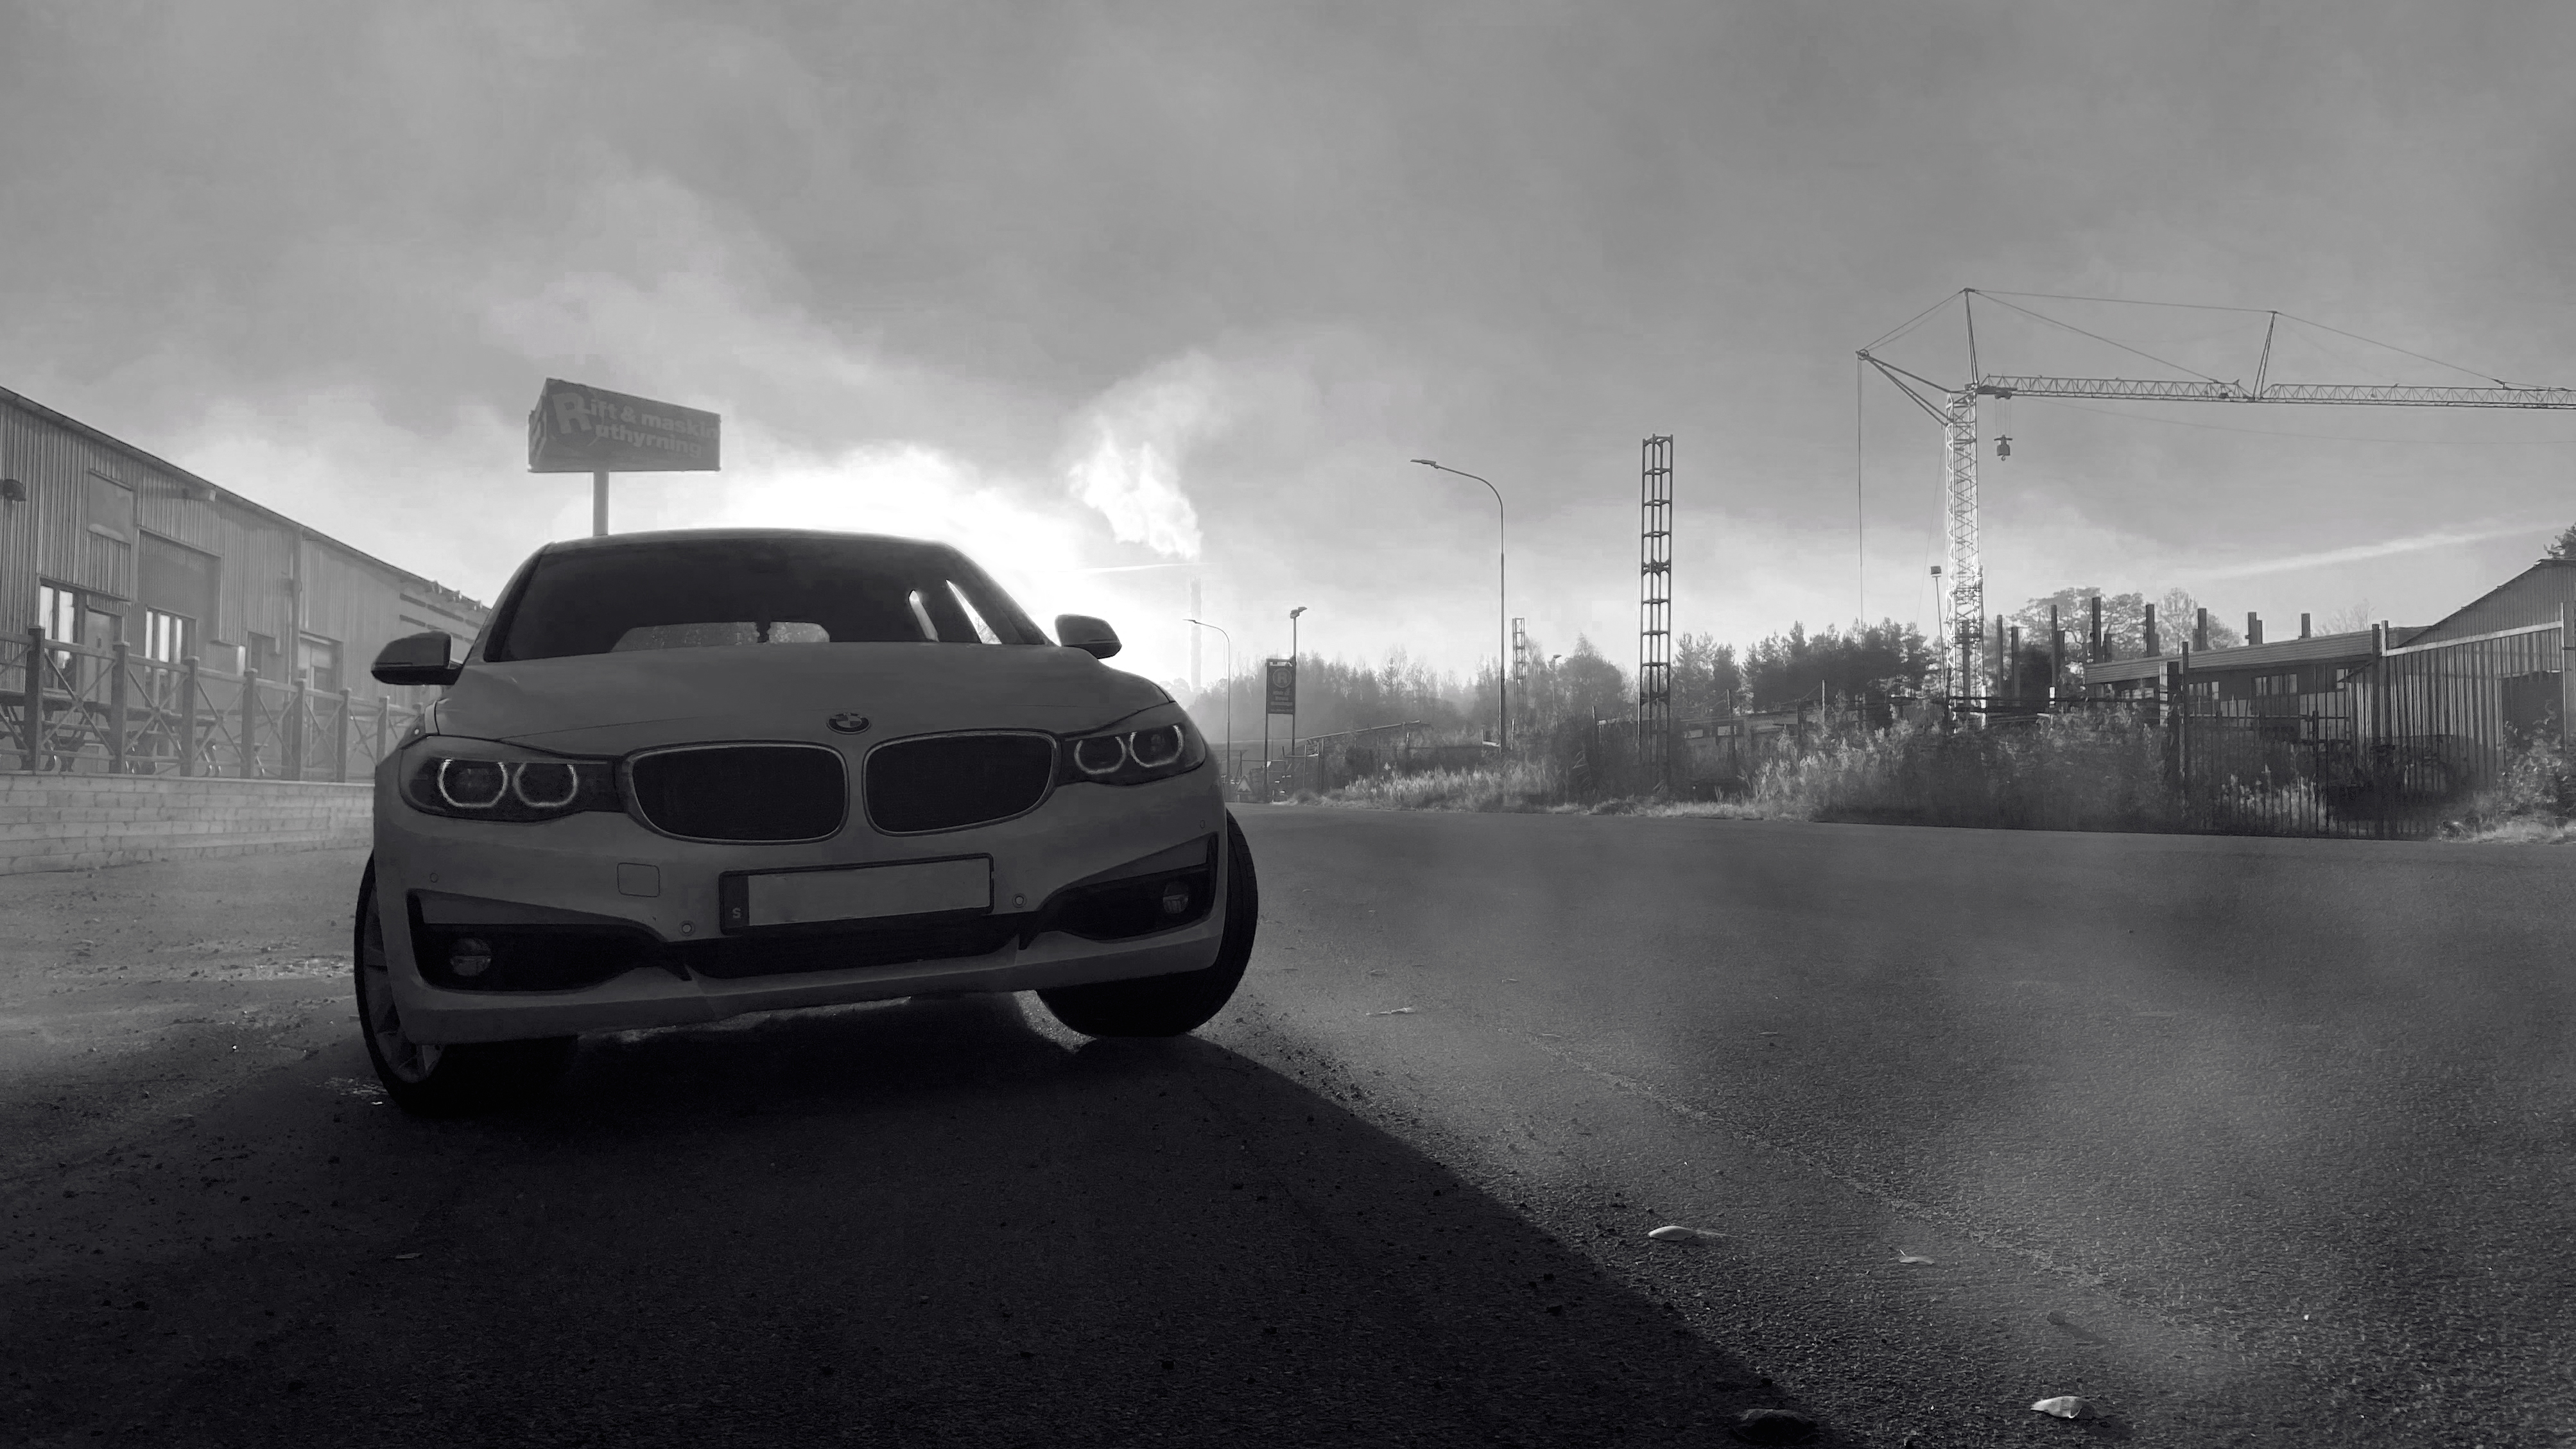 BMW Dystopian Dystopic Dark Fseries F34 330d Mist Industrial 4013x2258